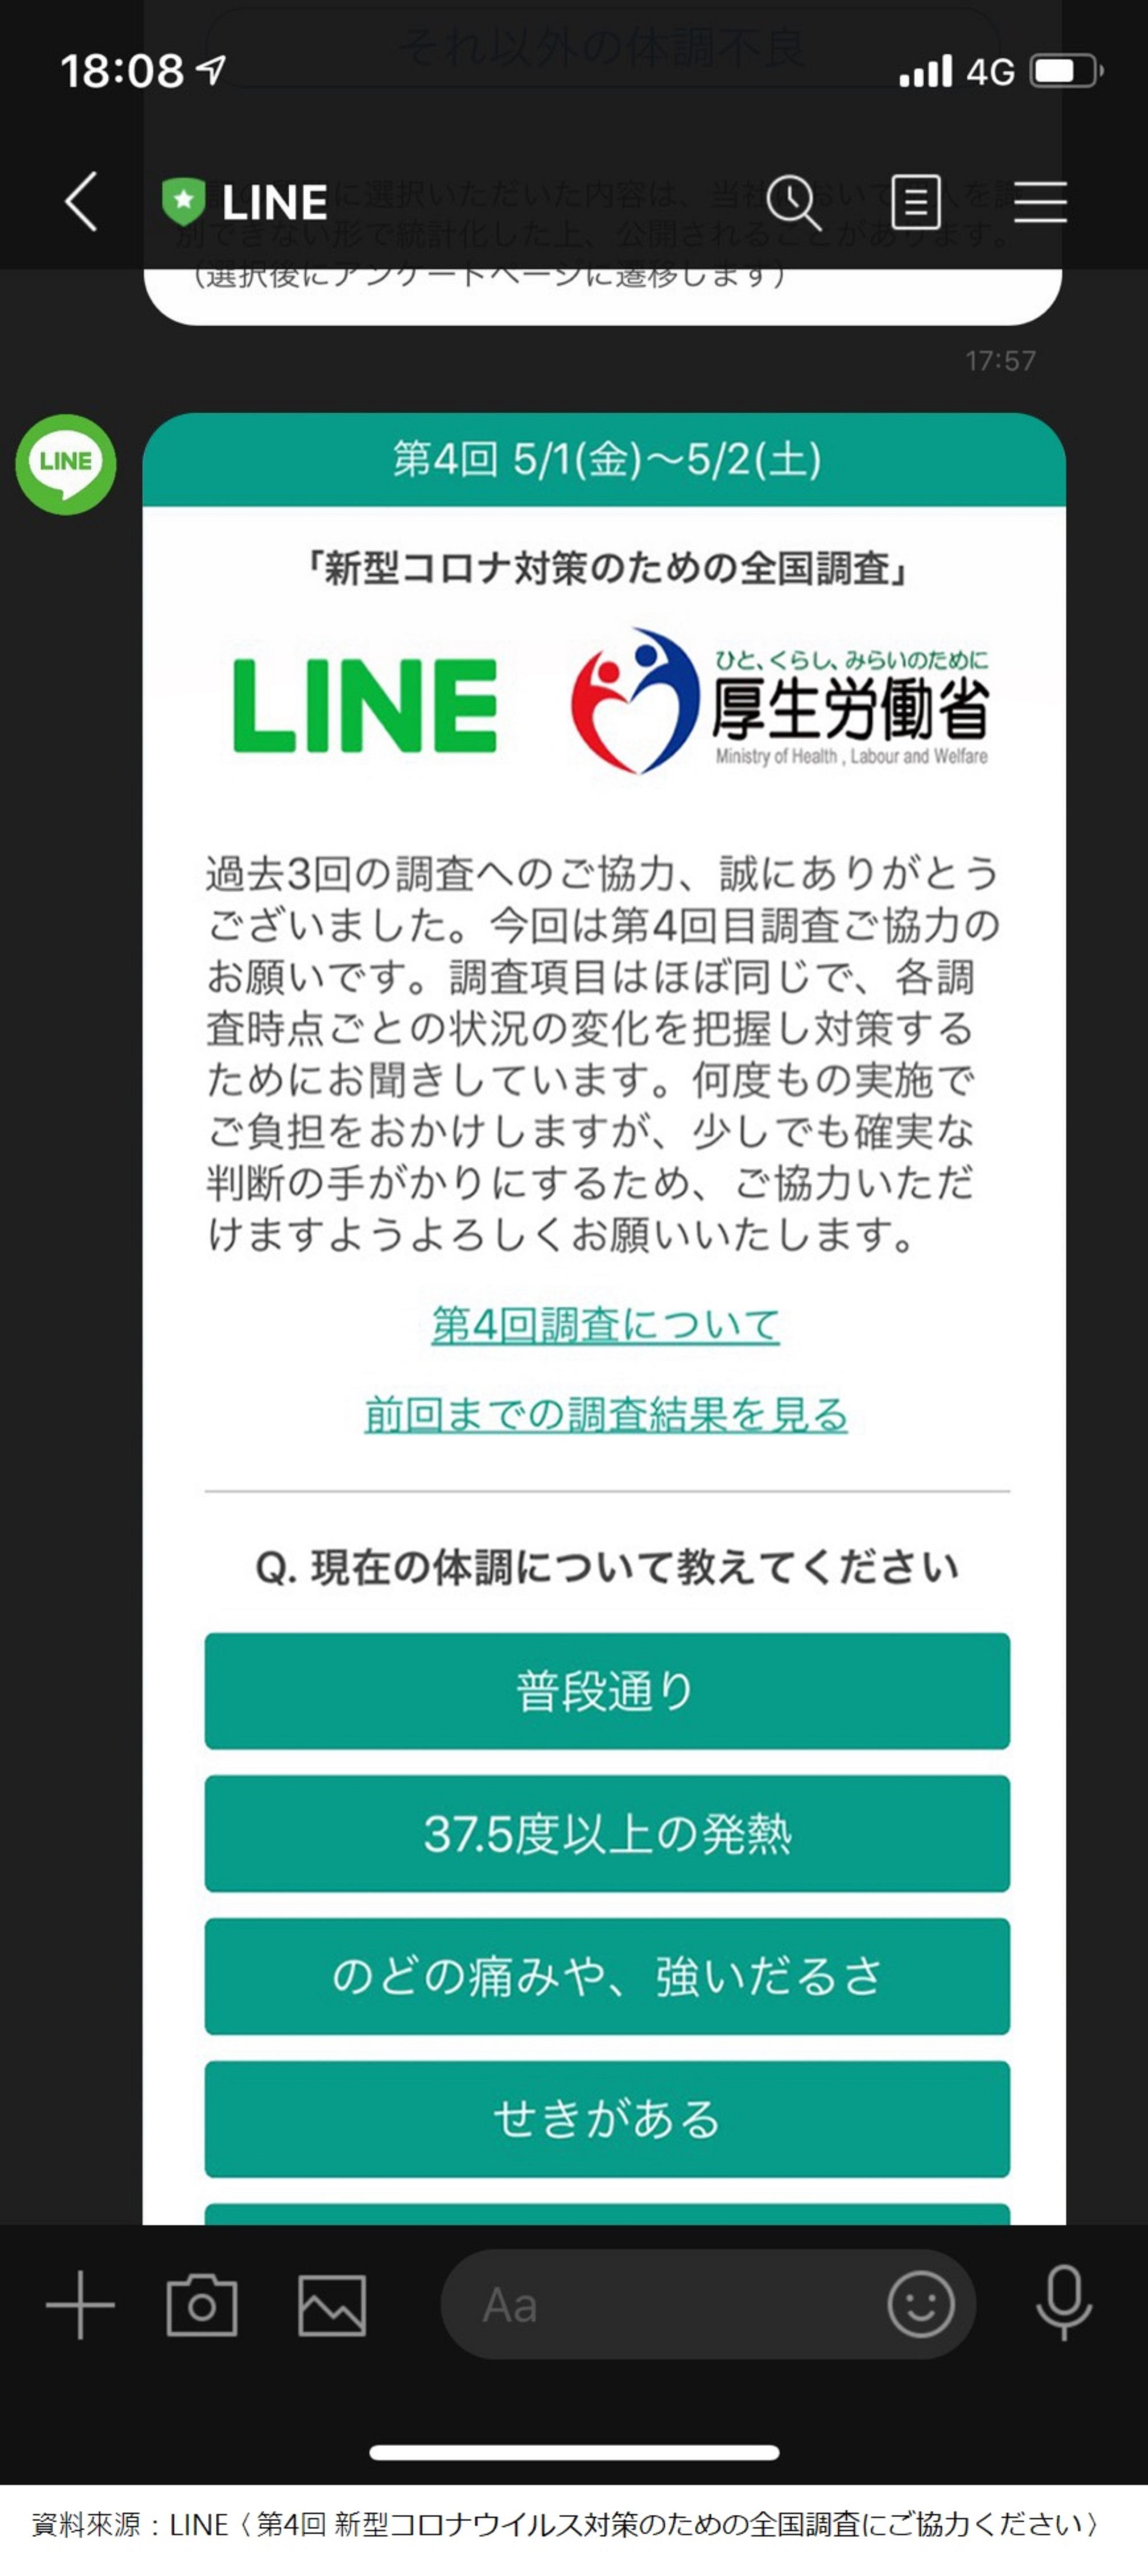 資策會科技法律研究所舉例說明，日本厚勞省與LINE達成協定，由LINE向用戶蒐集疫情相關統計資料並向政府提供